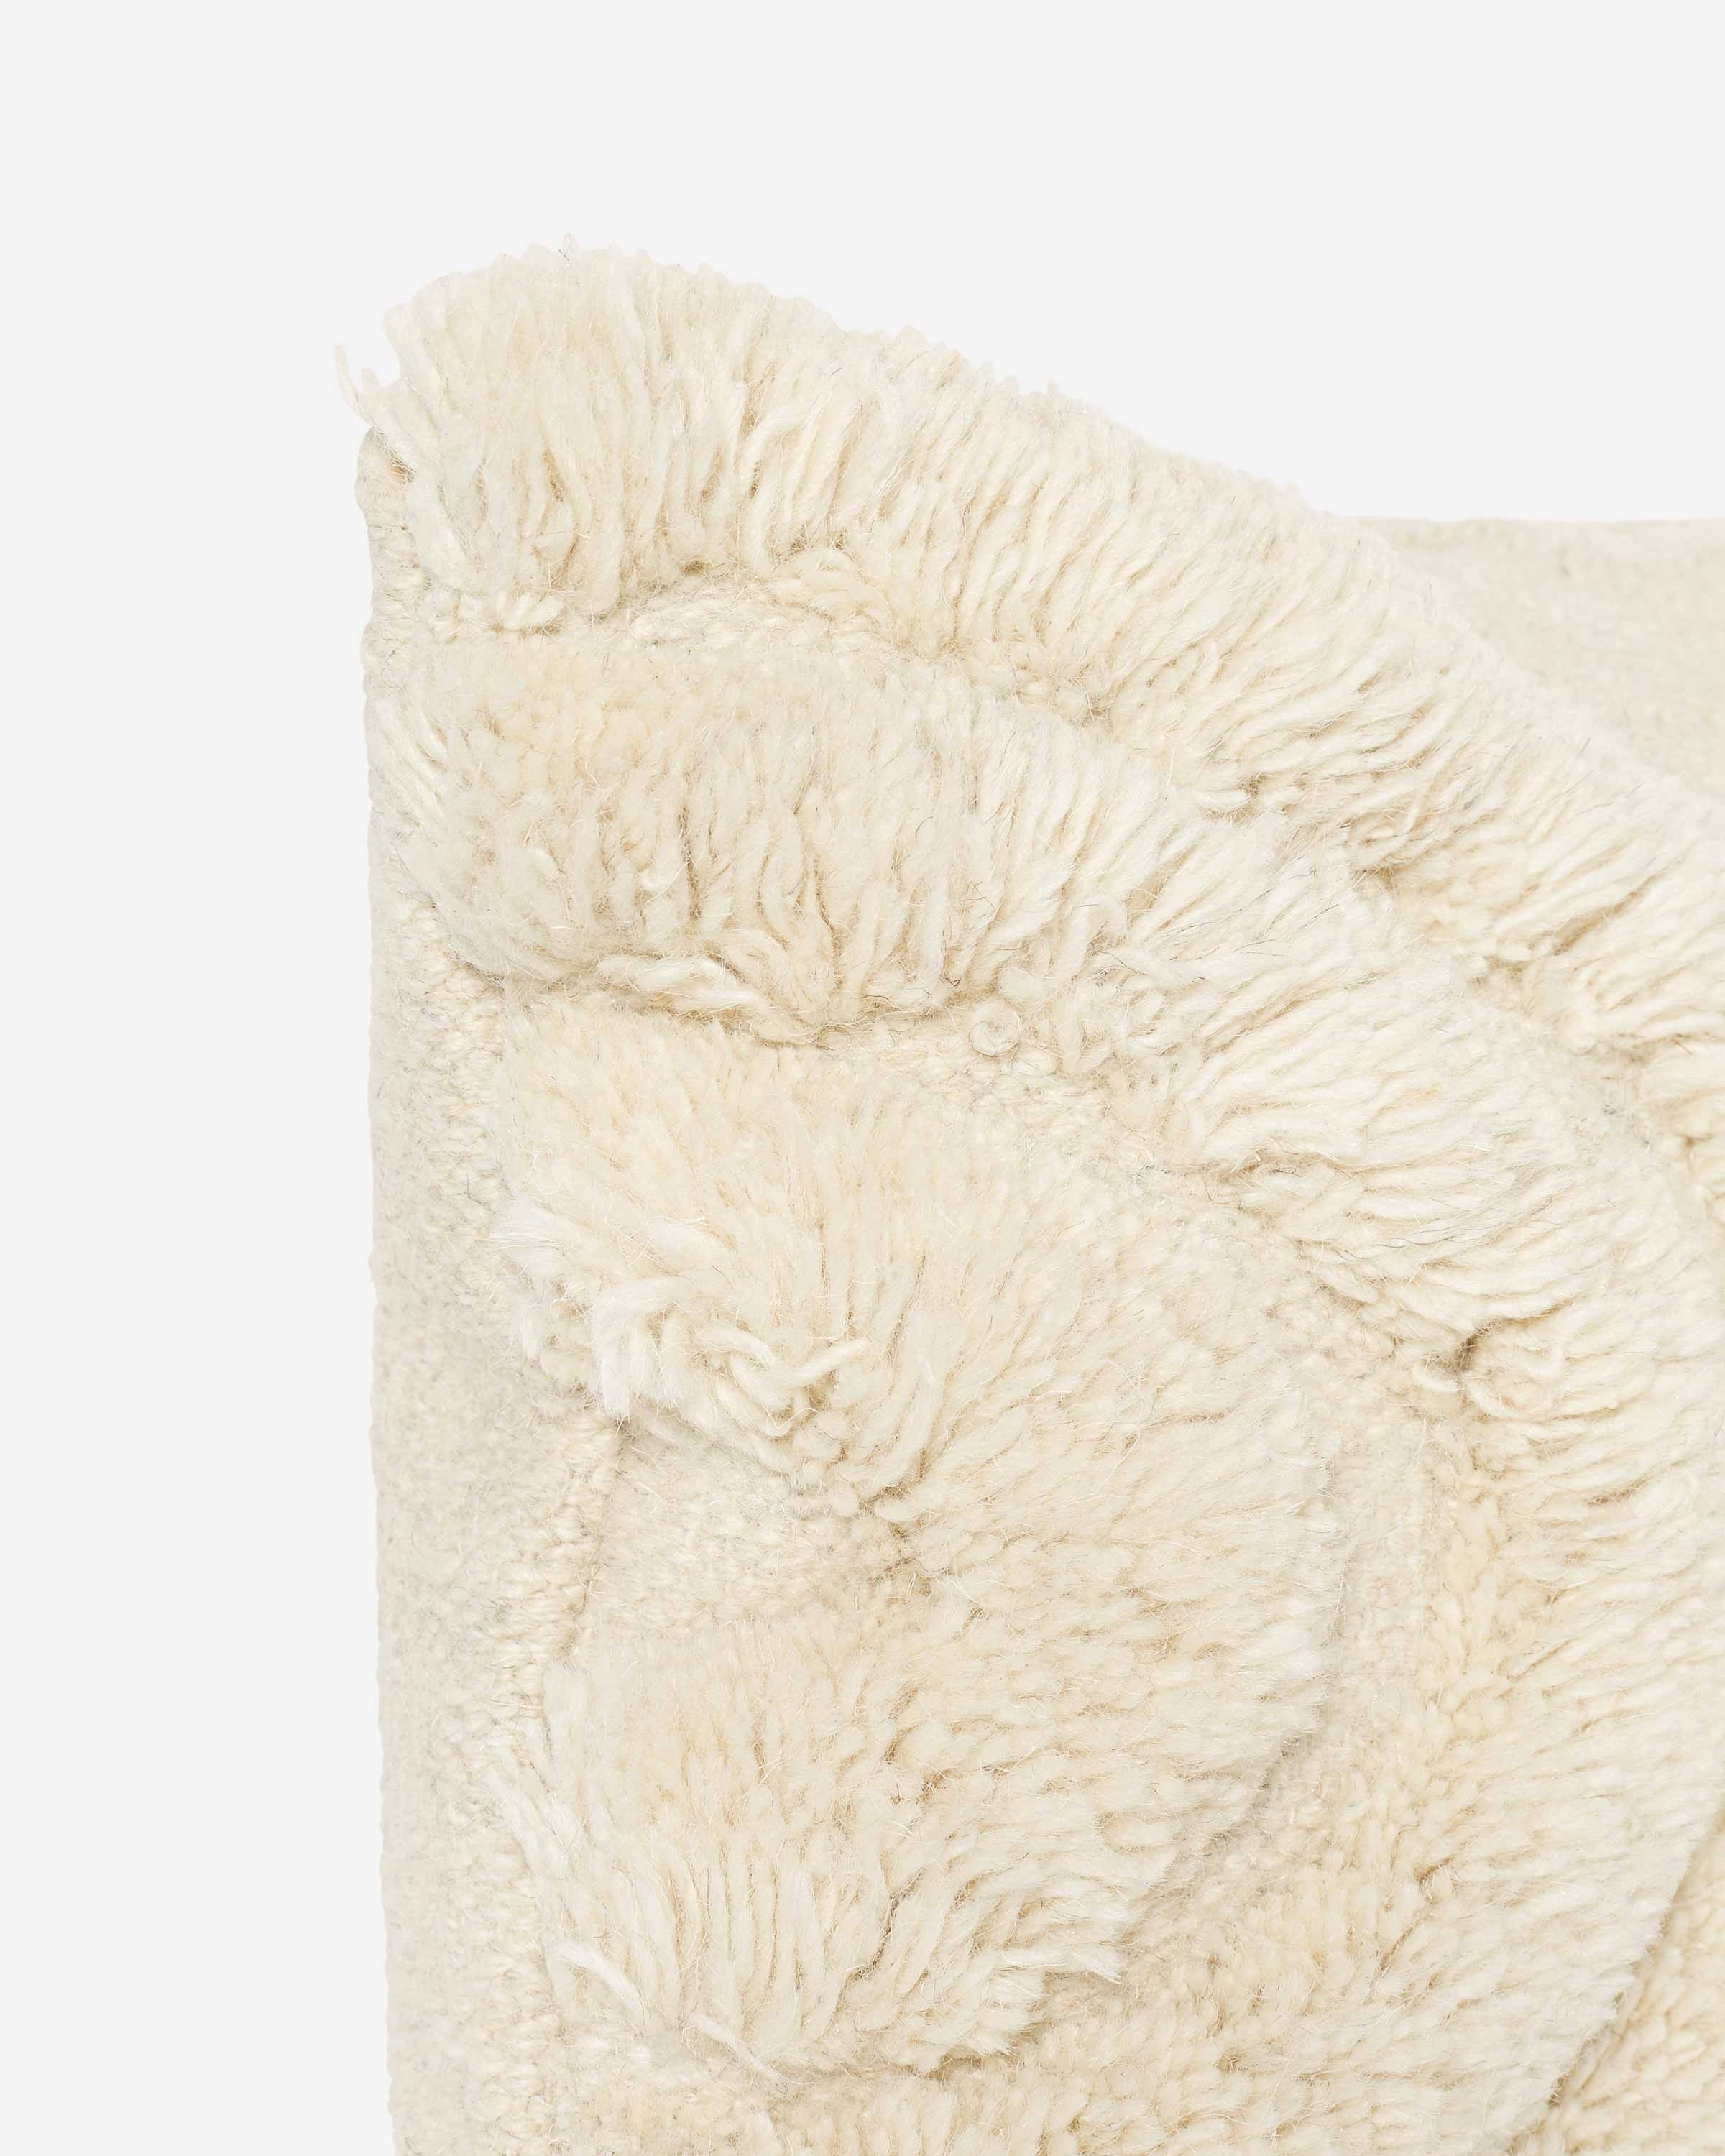 Arches Lumbar Pillow, Natural By Sarah Sherman Samuel - Image 3